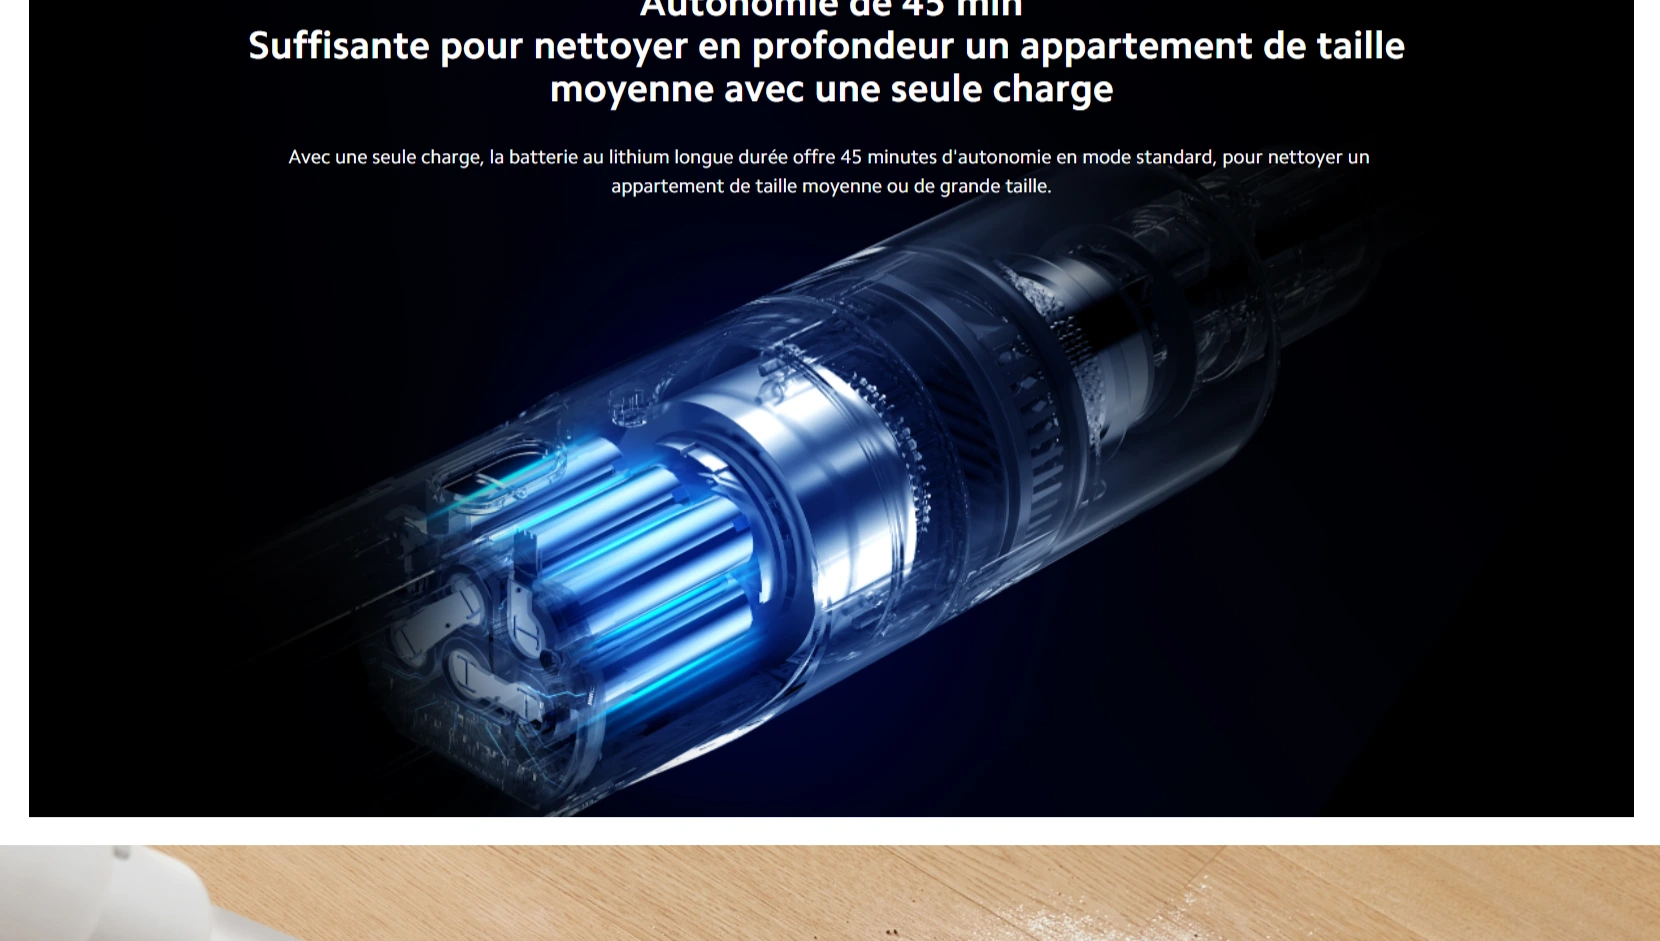 Mi Vacuum Cleaner Light Aspirateur - Vente en ligne tunisie MI-STORE  Tunisie : smartphones xiaomi , Redmi tunisie, smartphones tunisie